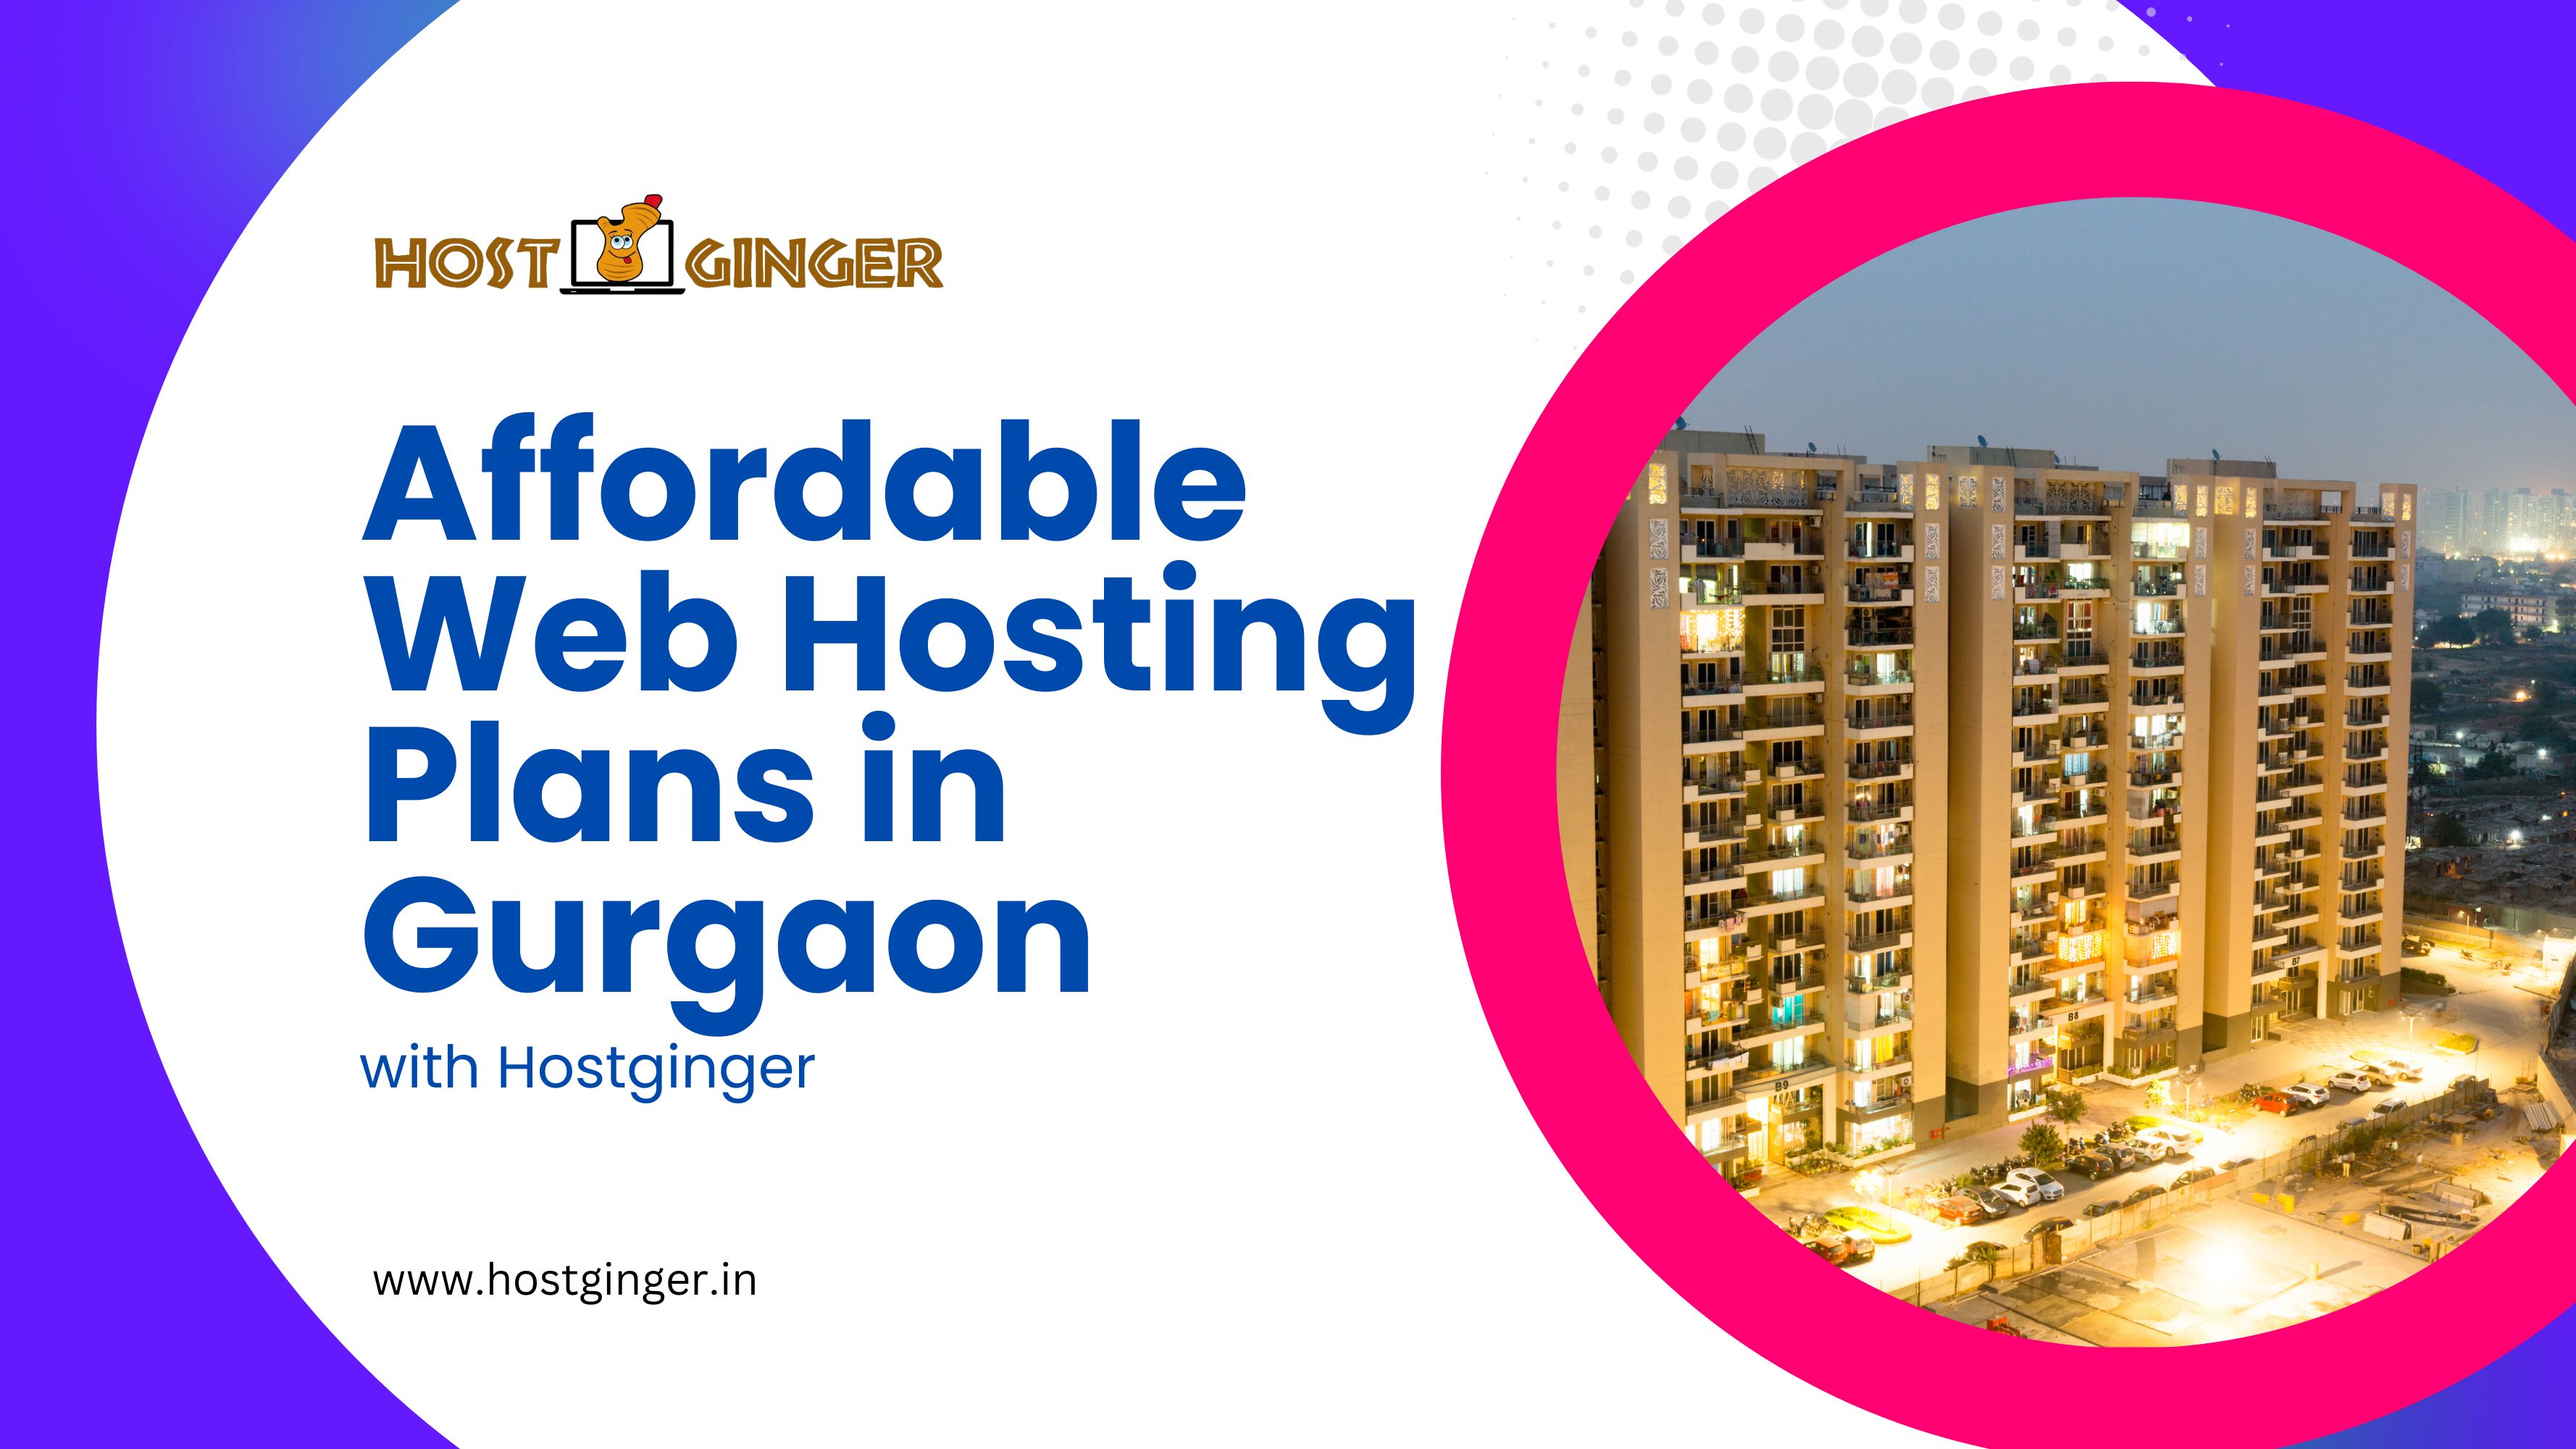 Affordable Web Hosting Plans in Gurgaon